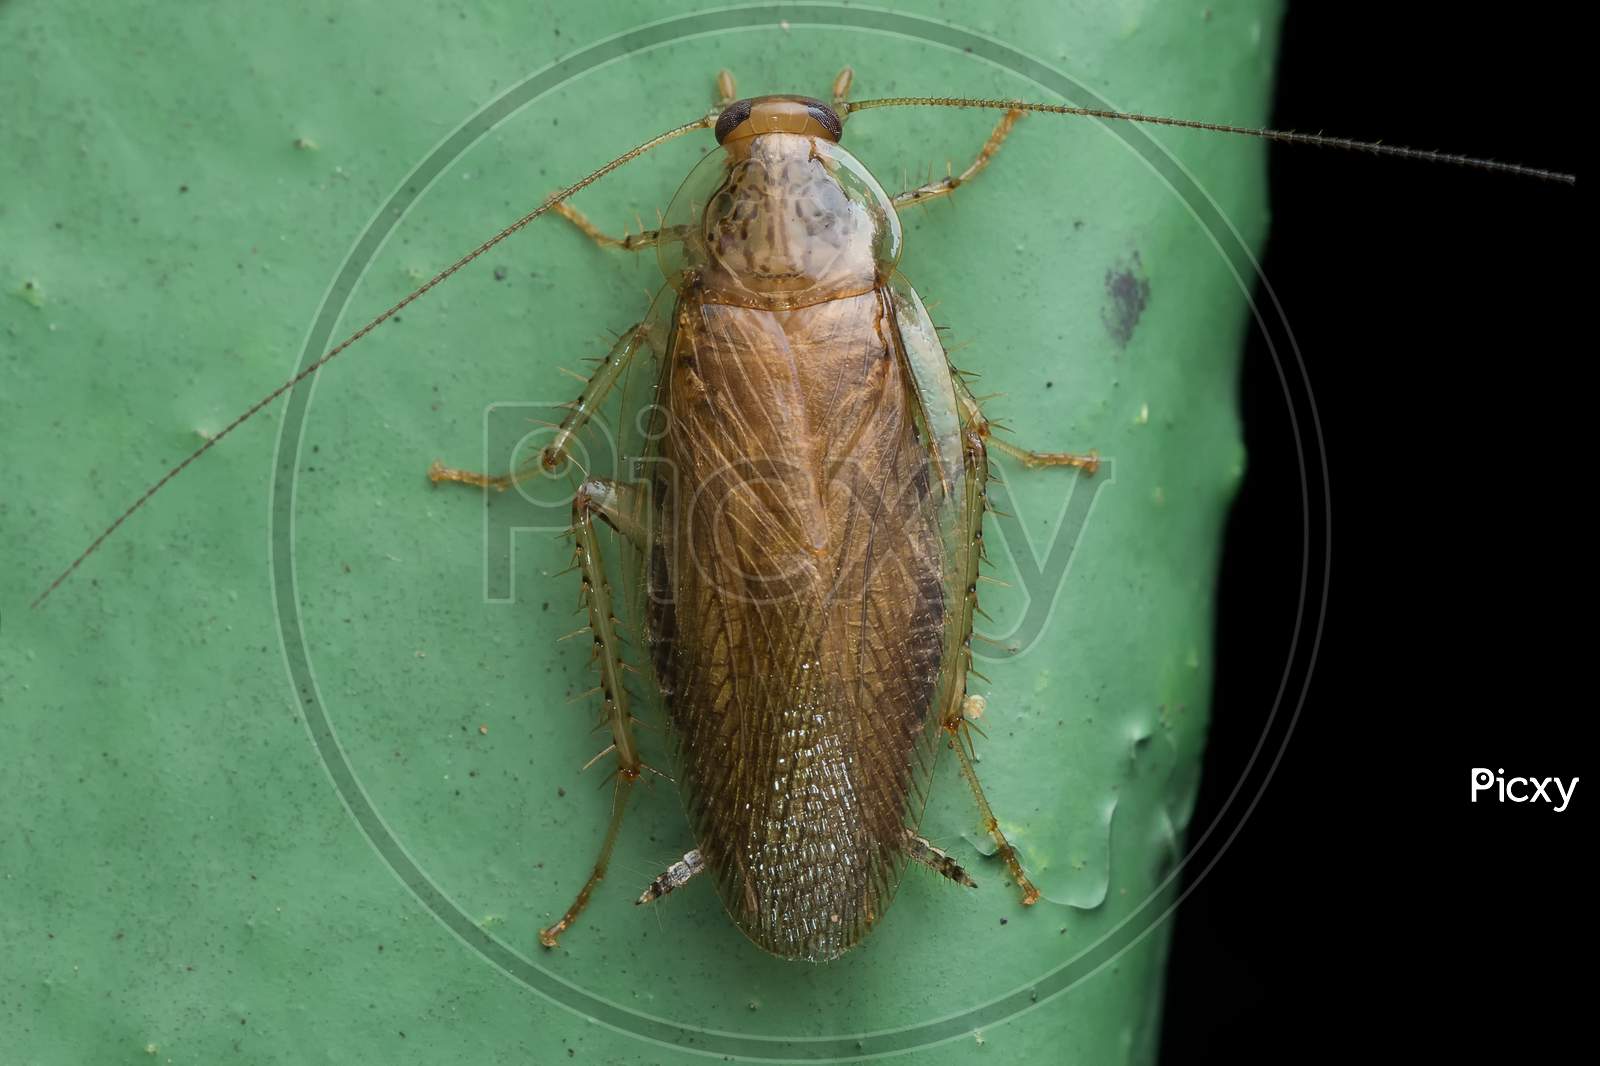 German Cockroach (Blattella Germanica) Ectobidae